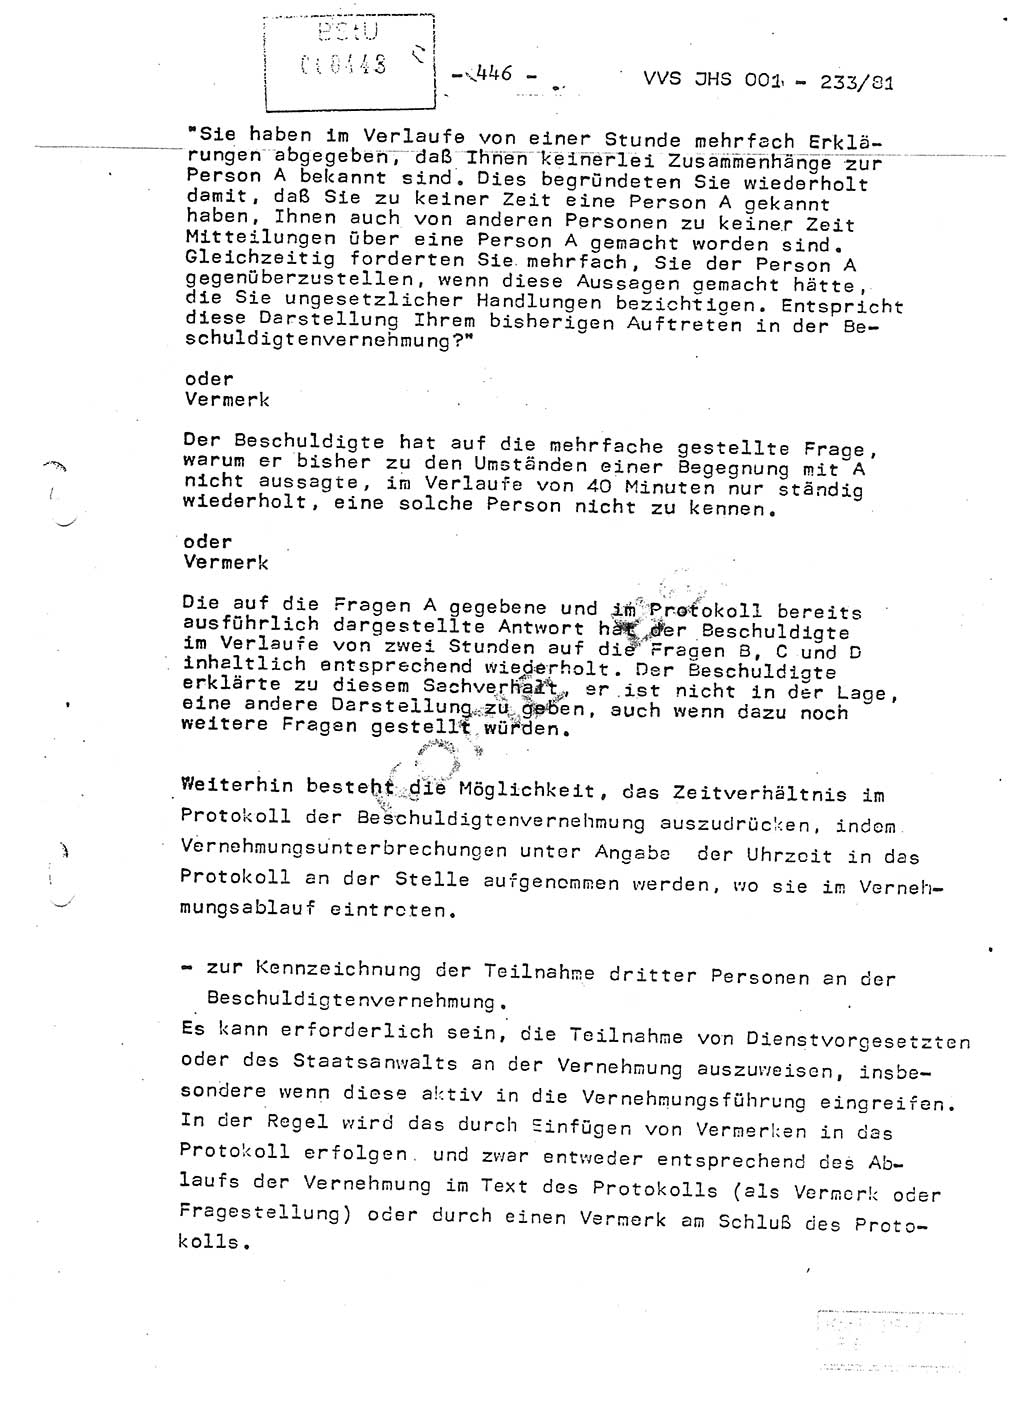 Dissertation Oberstleutnant Horst Zank (JHS), Oberstleutnant Dr. Karl-Heinz Knoblauch (JHS), Oberstleutnant Gustav-Adolf Kowalewski (HA Ⅸ), Oberstleutnant Wolfgang Plötner (HA Ⅸ), Ministerium für Staatssicherheit (MfS) [Deutsche Demokratische Republik (DDR)], Juristische Hochschule (JHS), Vertrauliche Verschlußsache (VVS) o001-233/81, Potsdam 1981, Blatt 446 (Diss. MfS DDR JHS VVS o001-233/81 1981, Bl. 446)